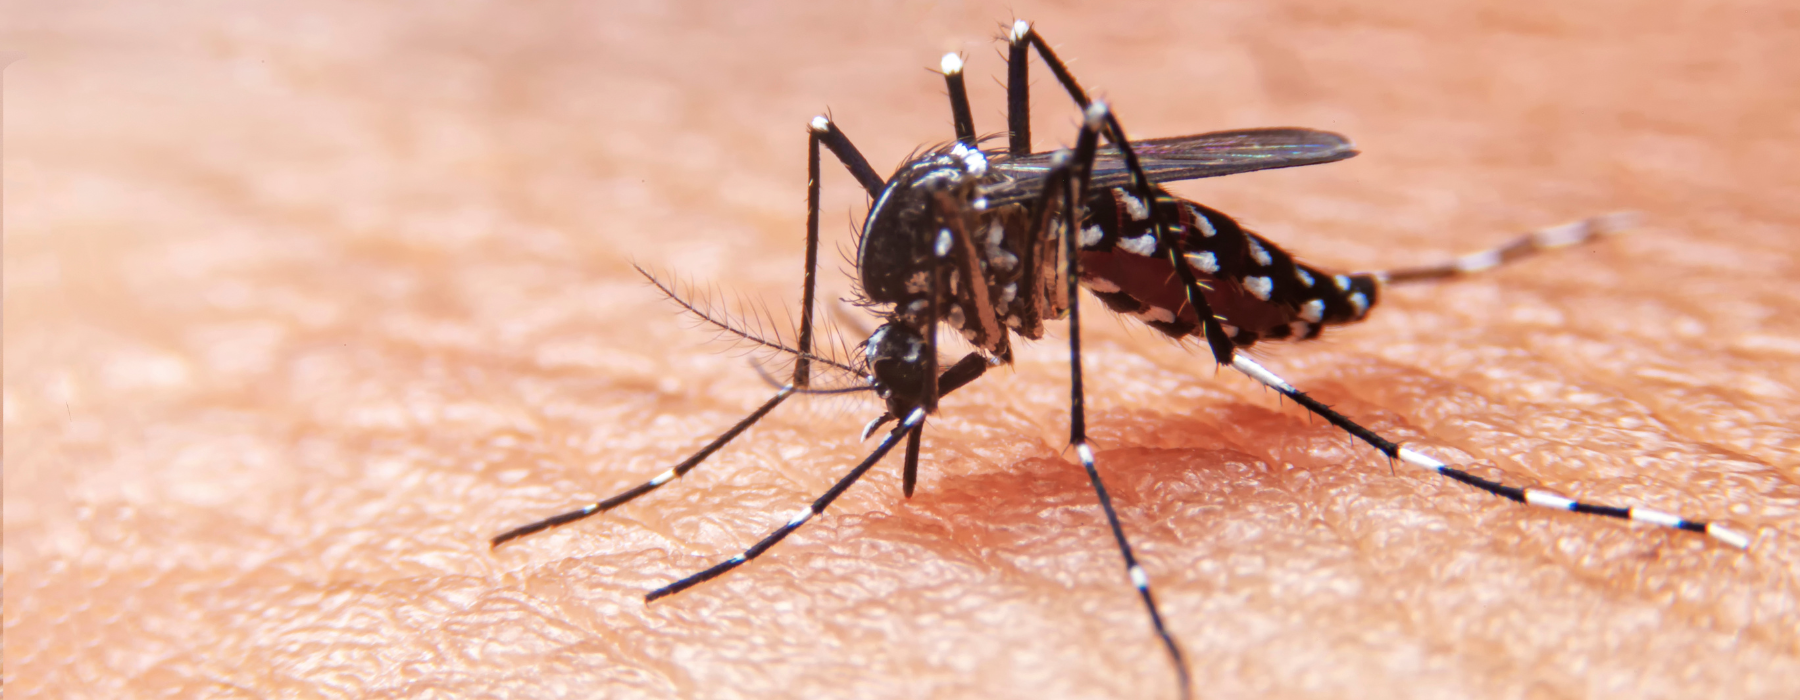 Dengue: entenda tudo sobre a doença